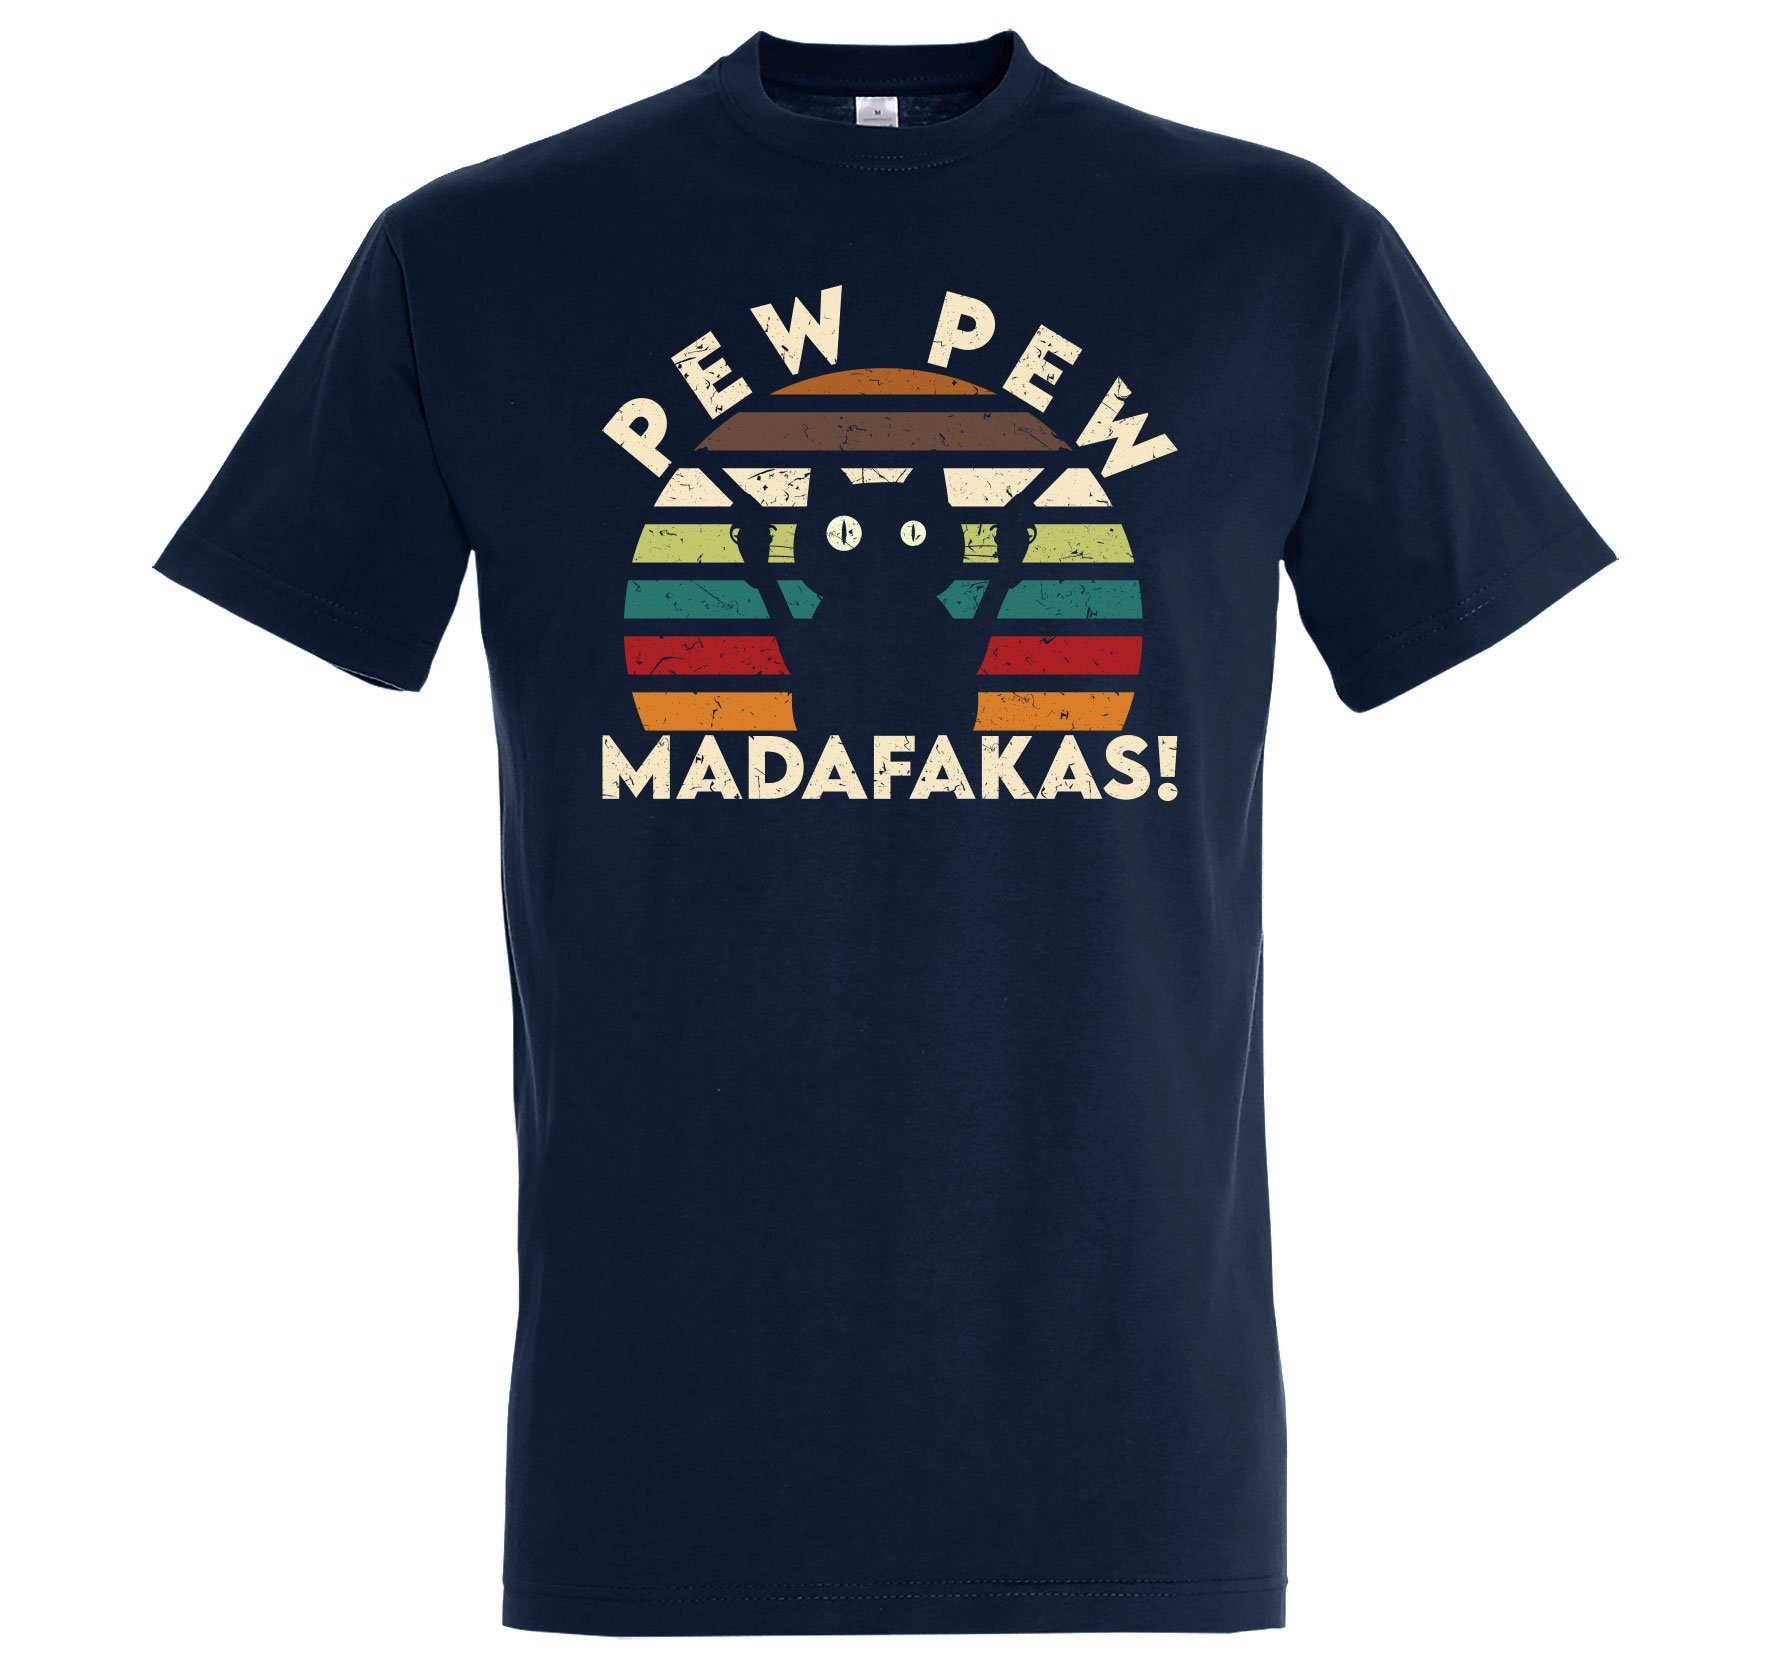 Herren Youth Navy T-Shirt Designz Pew lustigem Shirt mit Madafakas Print Pew Katzen